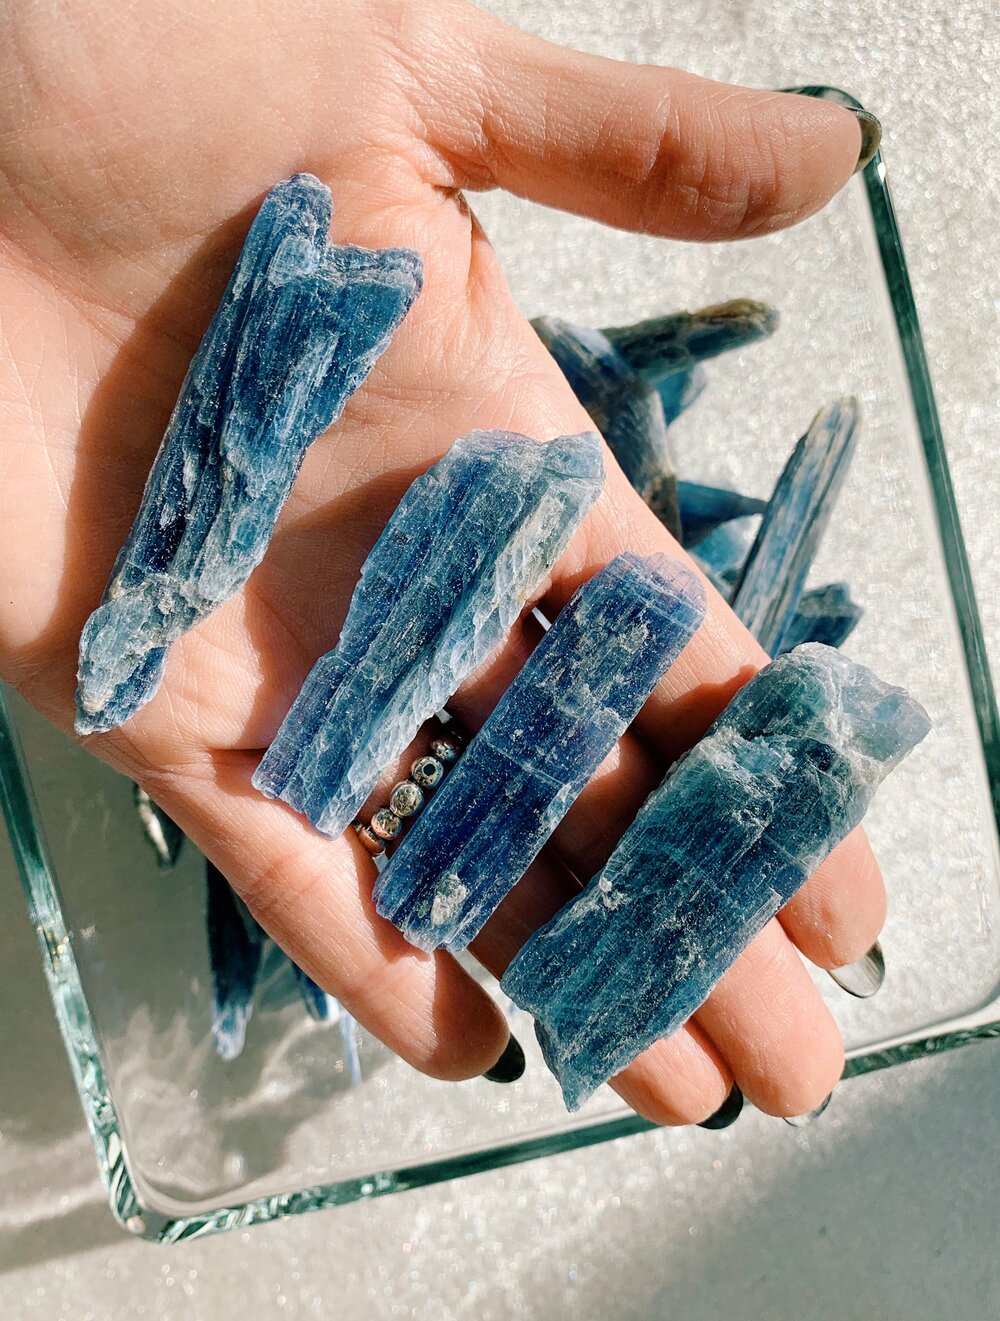 Blue Kyanite